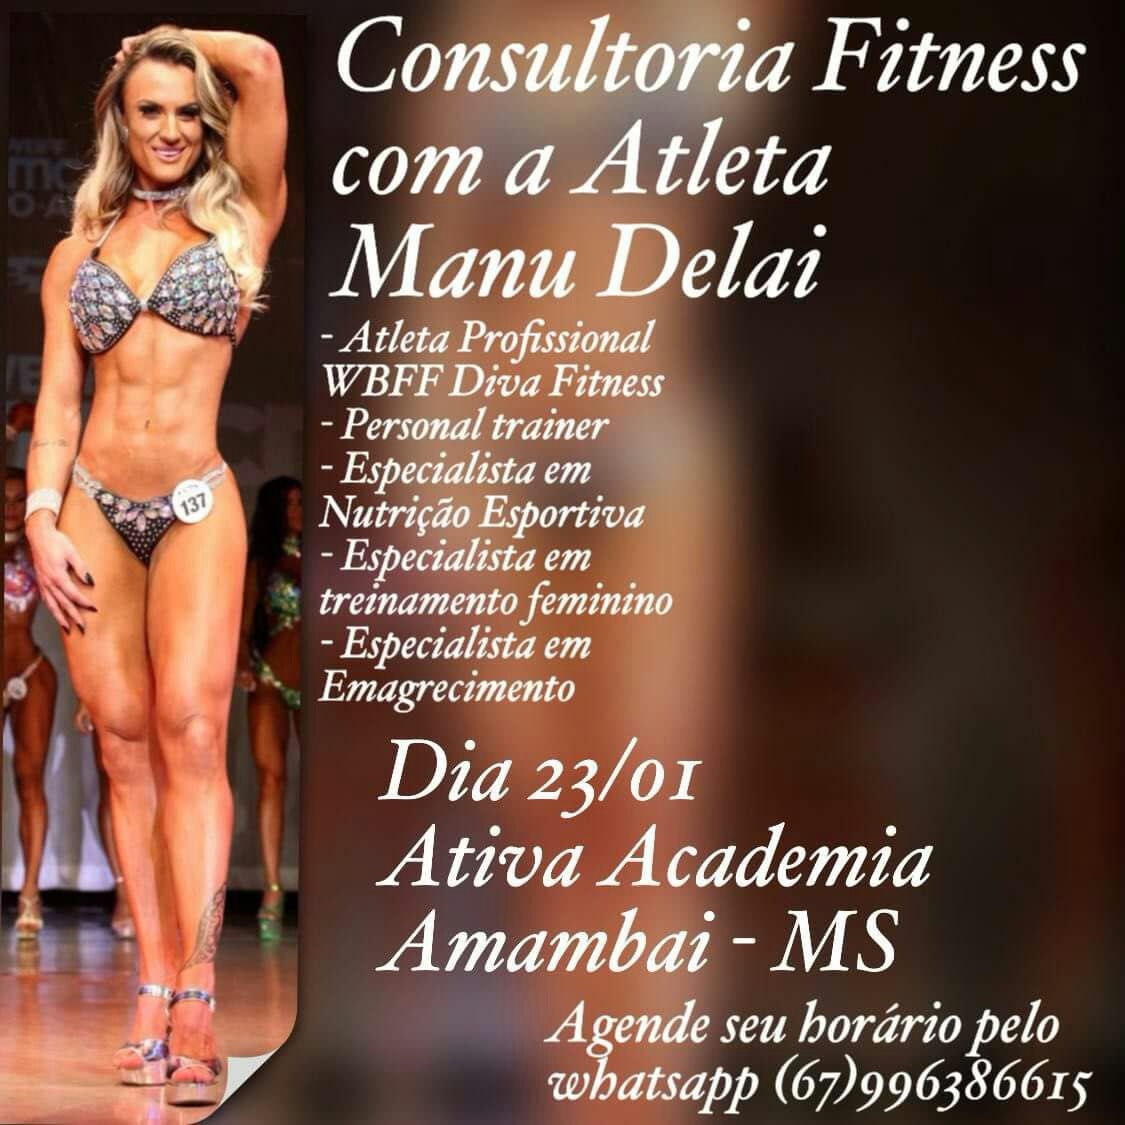 Manu Dela oferece Consultoria Fitness em Amambai / Foto: Divulgação